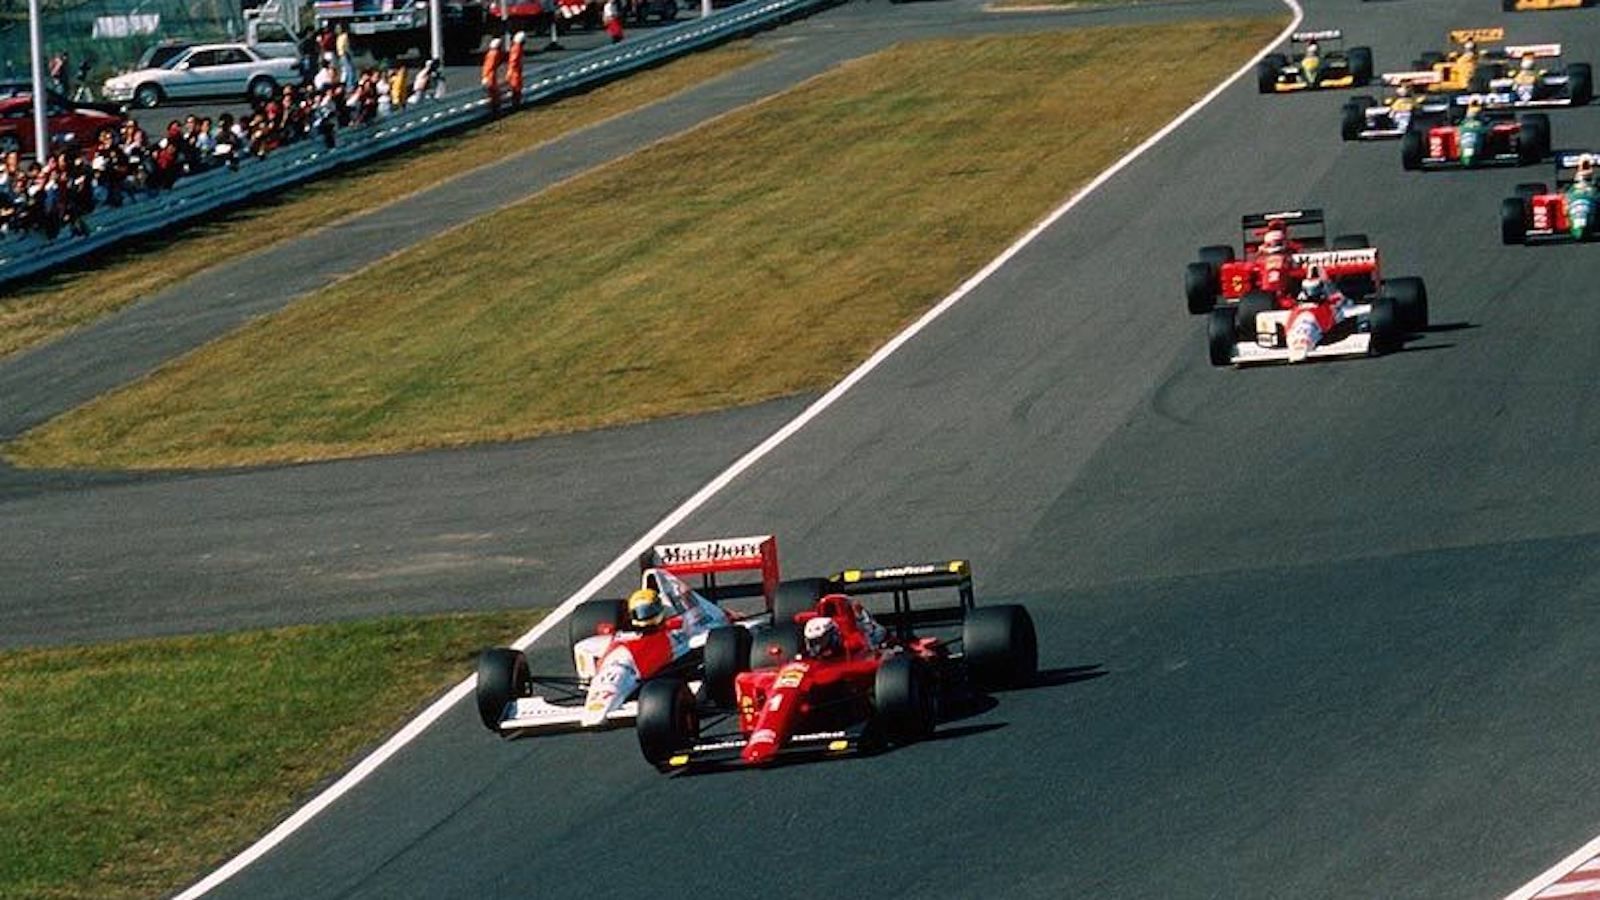 
                <strong>1990, Suzuka: Ayrton Senna vs. Alain Prost</strong><br>
                McLaren-Piloten Senna und Ferrari-Fahrer Prost pflegen seit Jahren eine tiefe Feindschaft. Vor dem vorletzten Rennen der Saison 1990 in Suzuka pöbelt Senna gegen seinen Rivalen. "Er sollte besser nicht vor mir einlenken, denn dann wird er es nicht durch die Kurve schaffen", kündigt Senna nach dem Qualifying an. Gesagt, getan. Beide kollidieren und müssen ihre Boliden nach der ersten Kurve abstellen. Senna entgeht einer Strafe für seinen Abschuss und wird Weltmeister. 
              